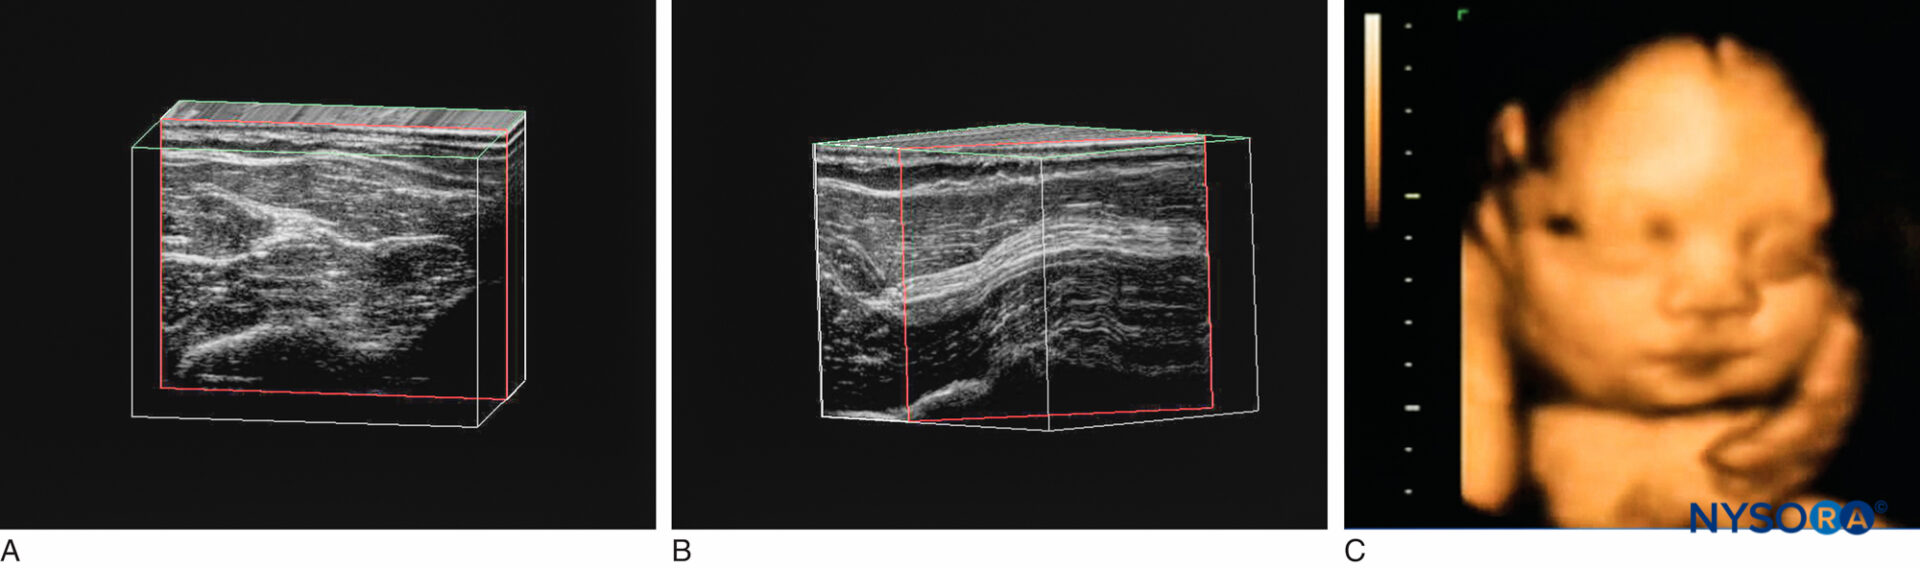 Échographie Cadre photo à ultrasons Cadre photo à ultrasons pour